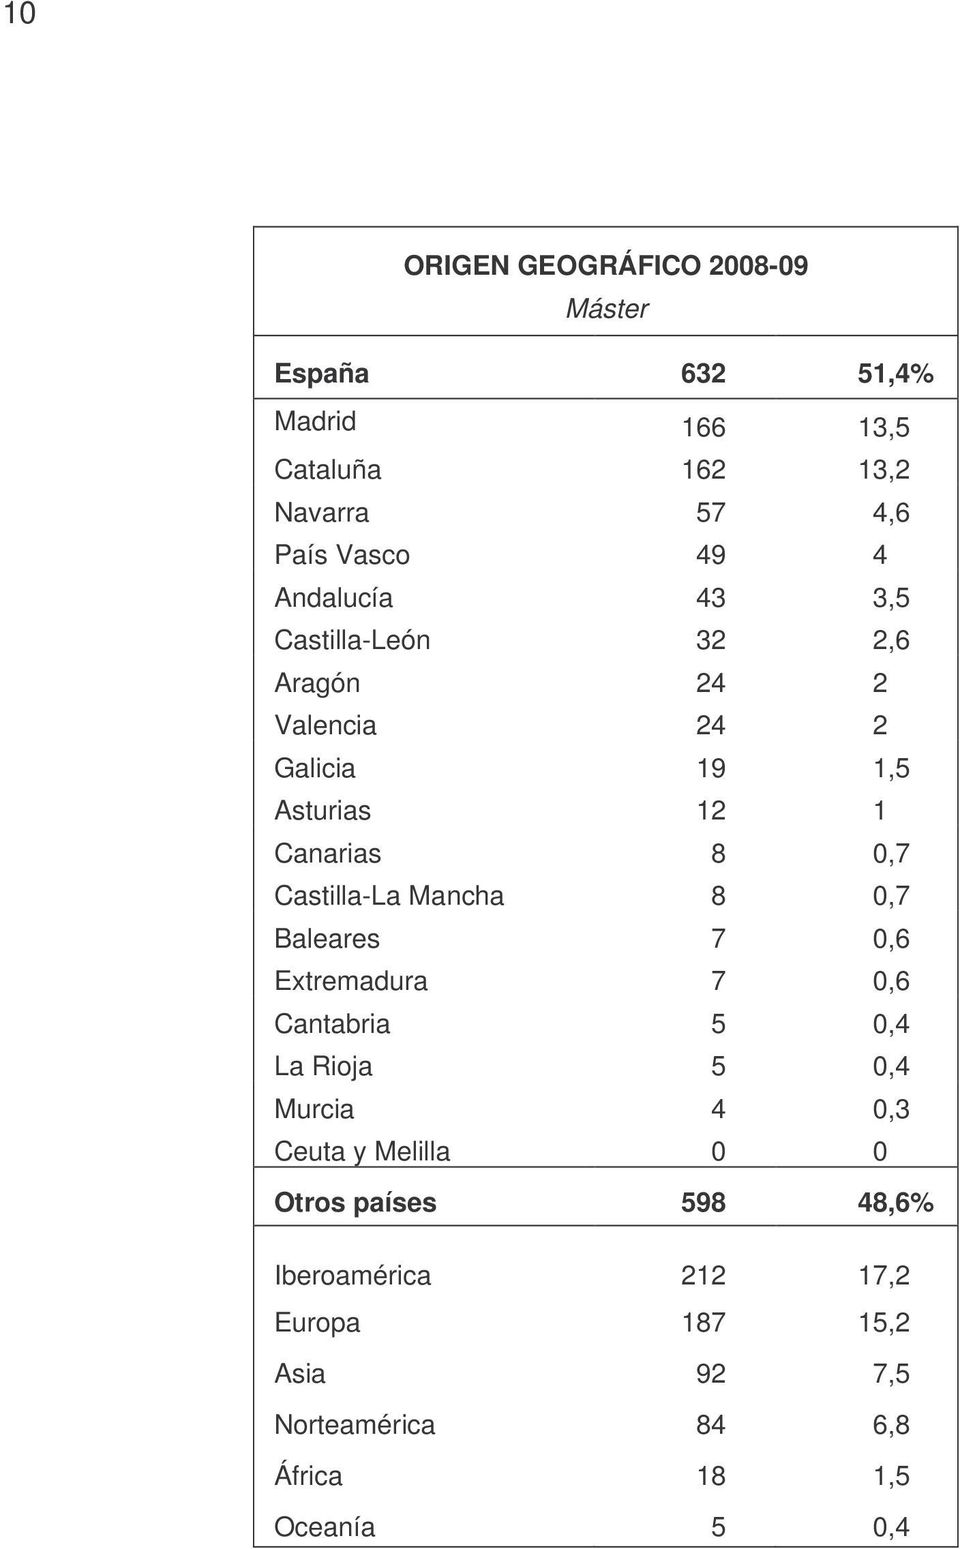 Castilla-La Mancha 8 0,7 Baleares 7 0,6 Extremadura 7 0,6 Cantabria 5 0,4 La Rioja 5 0,4 Murcia 4 0,3 Ceuta y